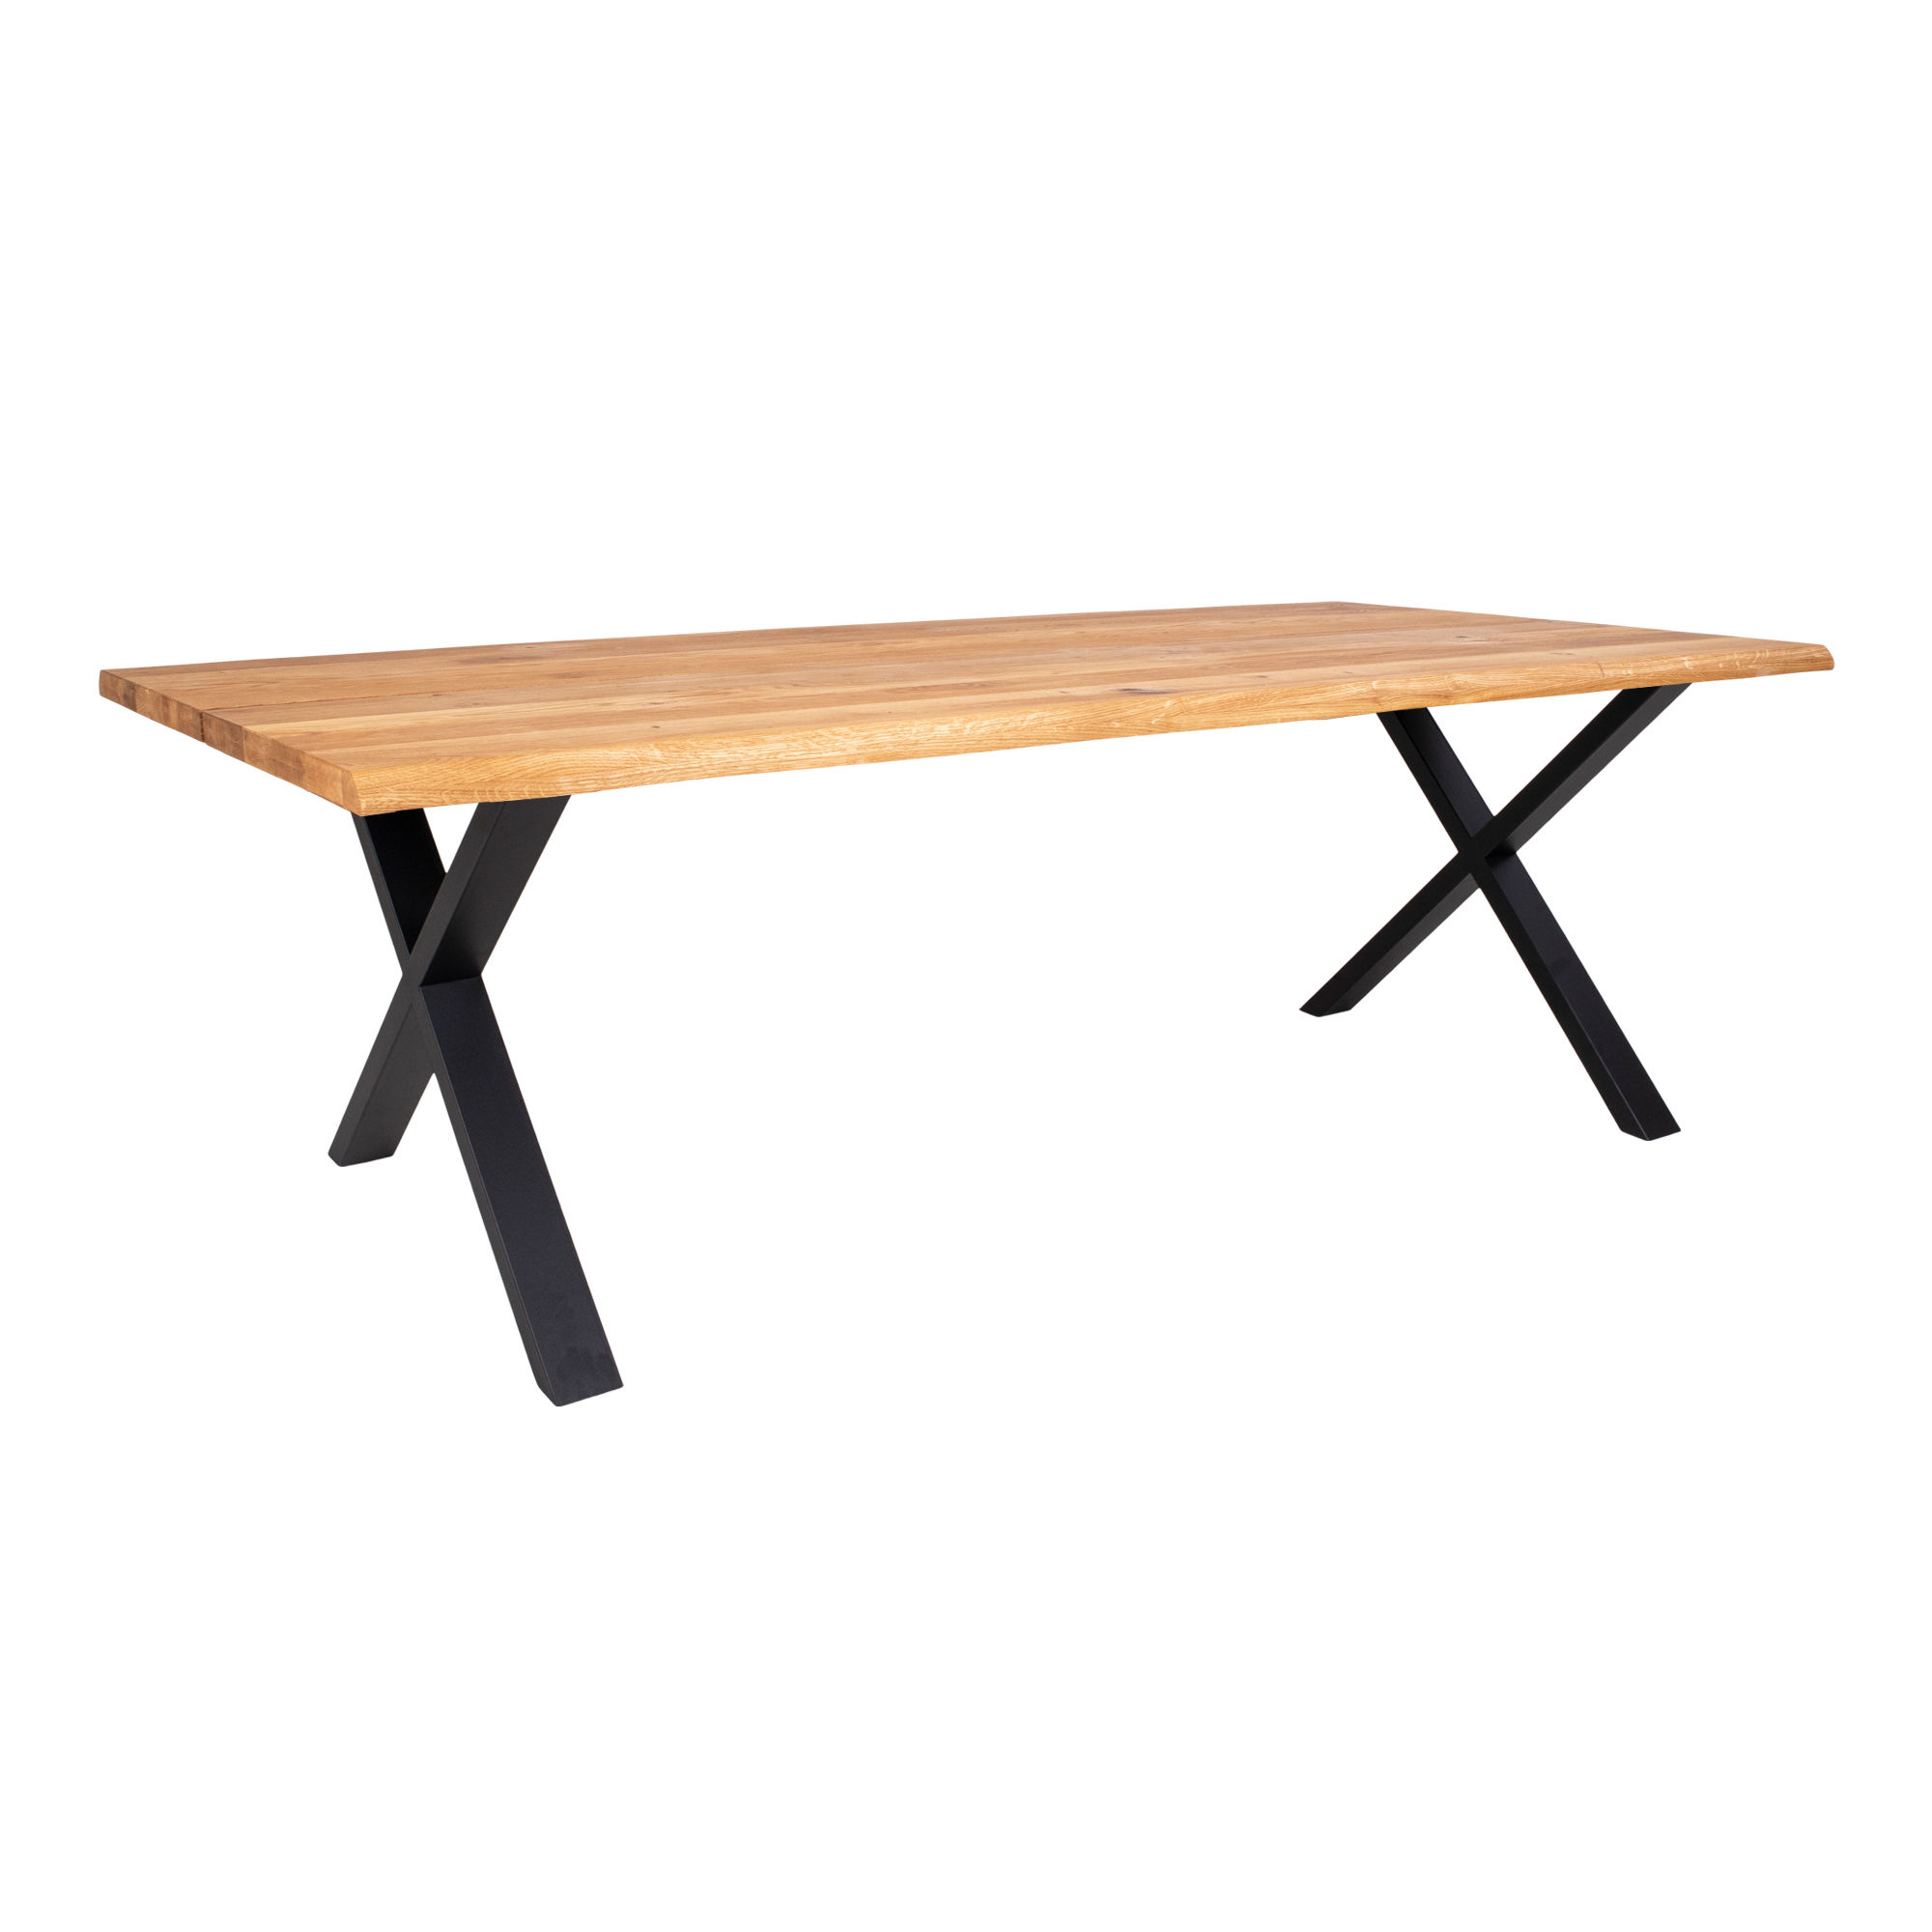 5: Juva - Spisebord i olieret  eg, 95 x 240 cm, med eller uden tillægsplader Med 2 tillægsplader